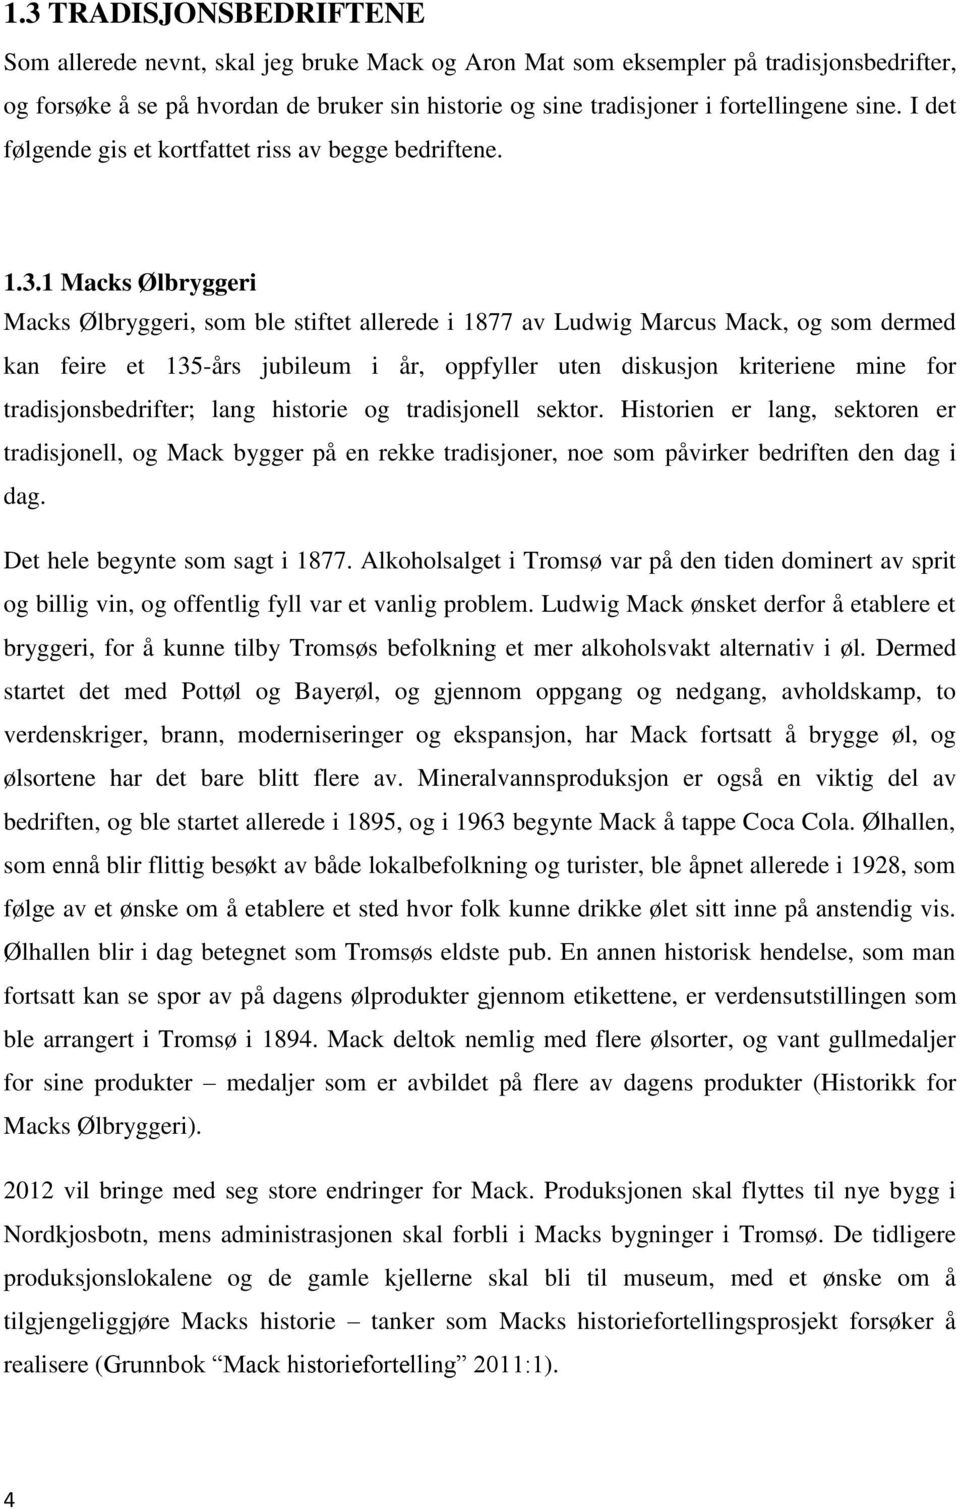 1 Macks Ølbryggeri Macks Ølbryggeri, som ble stiftet allerede i 1877 av Ludwig Marcus Mack, og som dermed kan feire et 135-års jubileum i år, oppfyller uten diskusjon kriteriene mine for